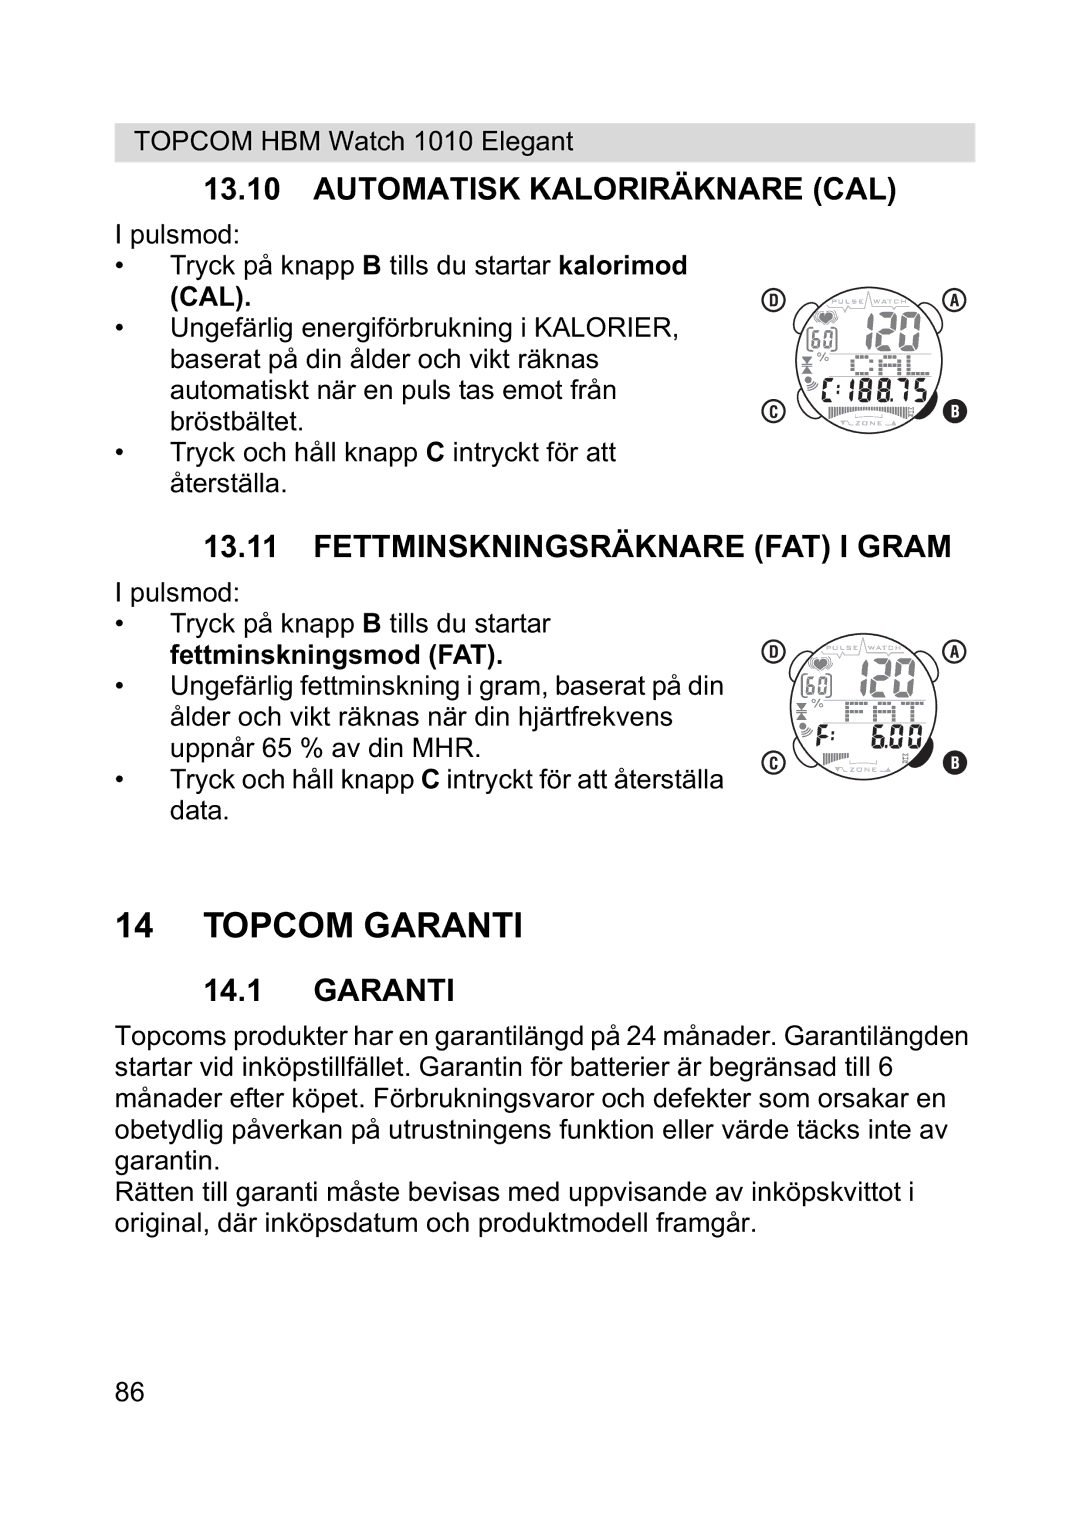 Topcom 1010 Elelgant manual Topcom Garanti, Automatisk Kaloriräknare CAL, Fettminskningsräknare FAT I Gram 